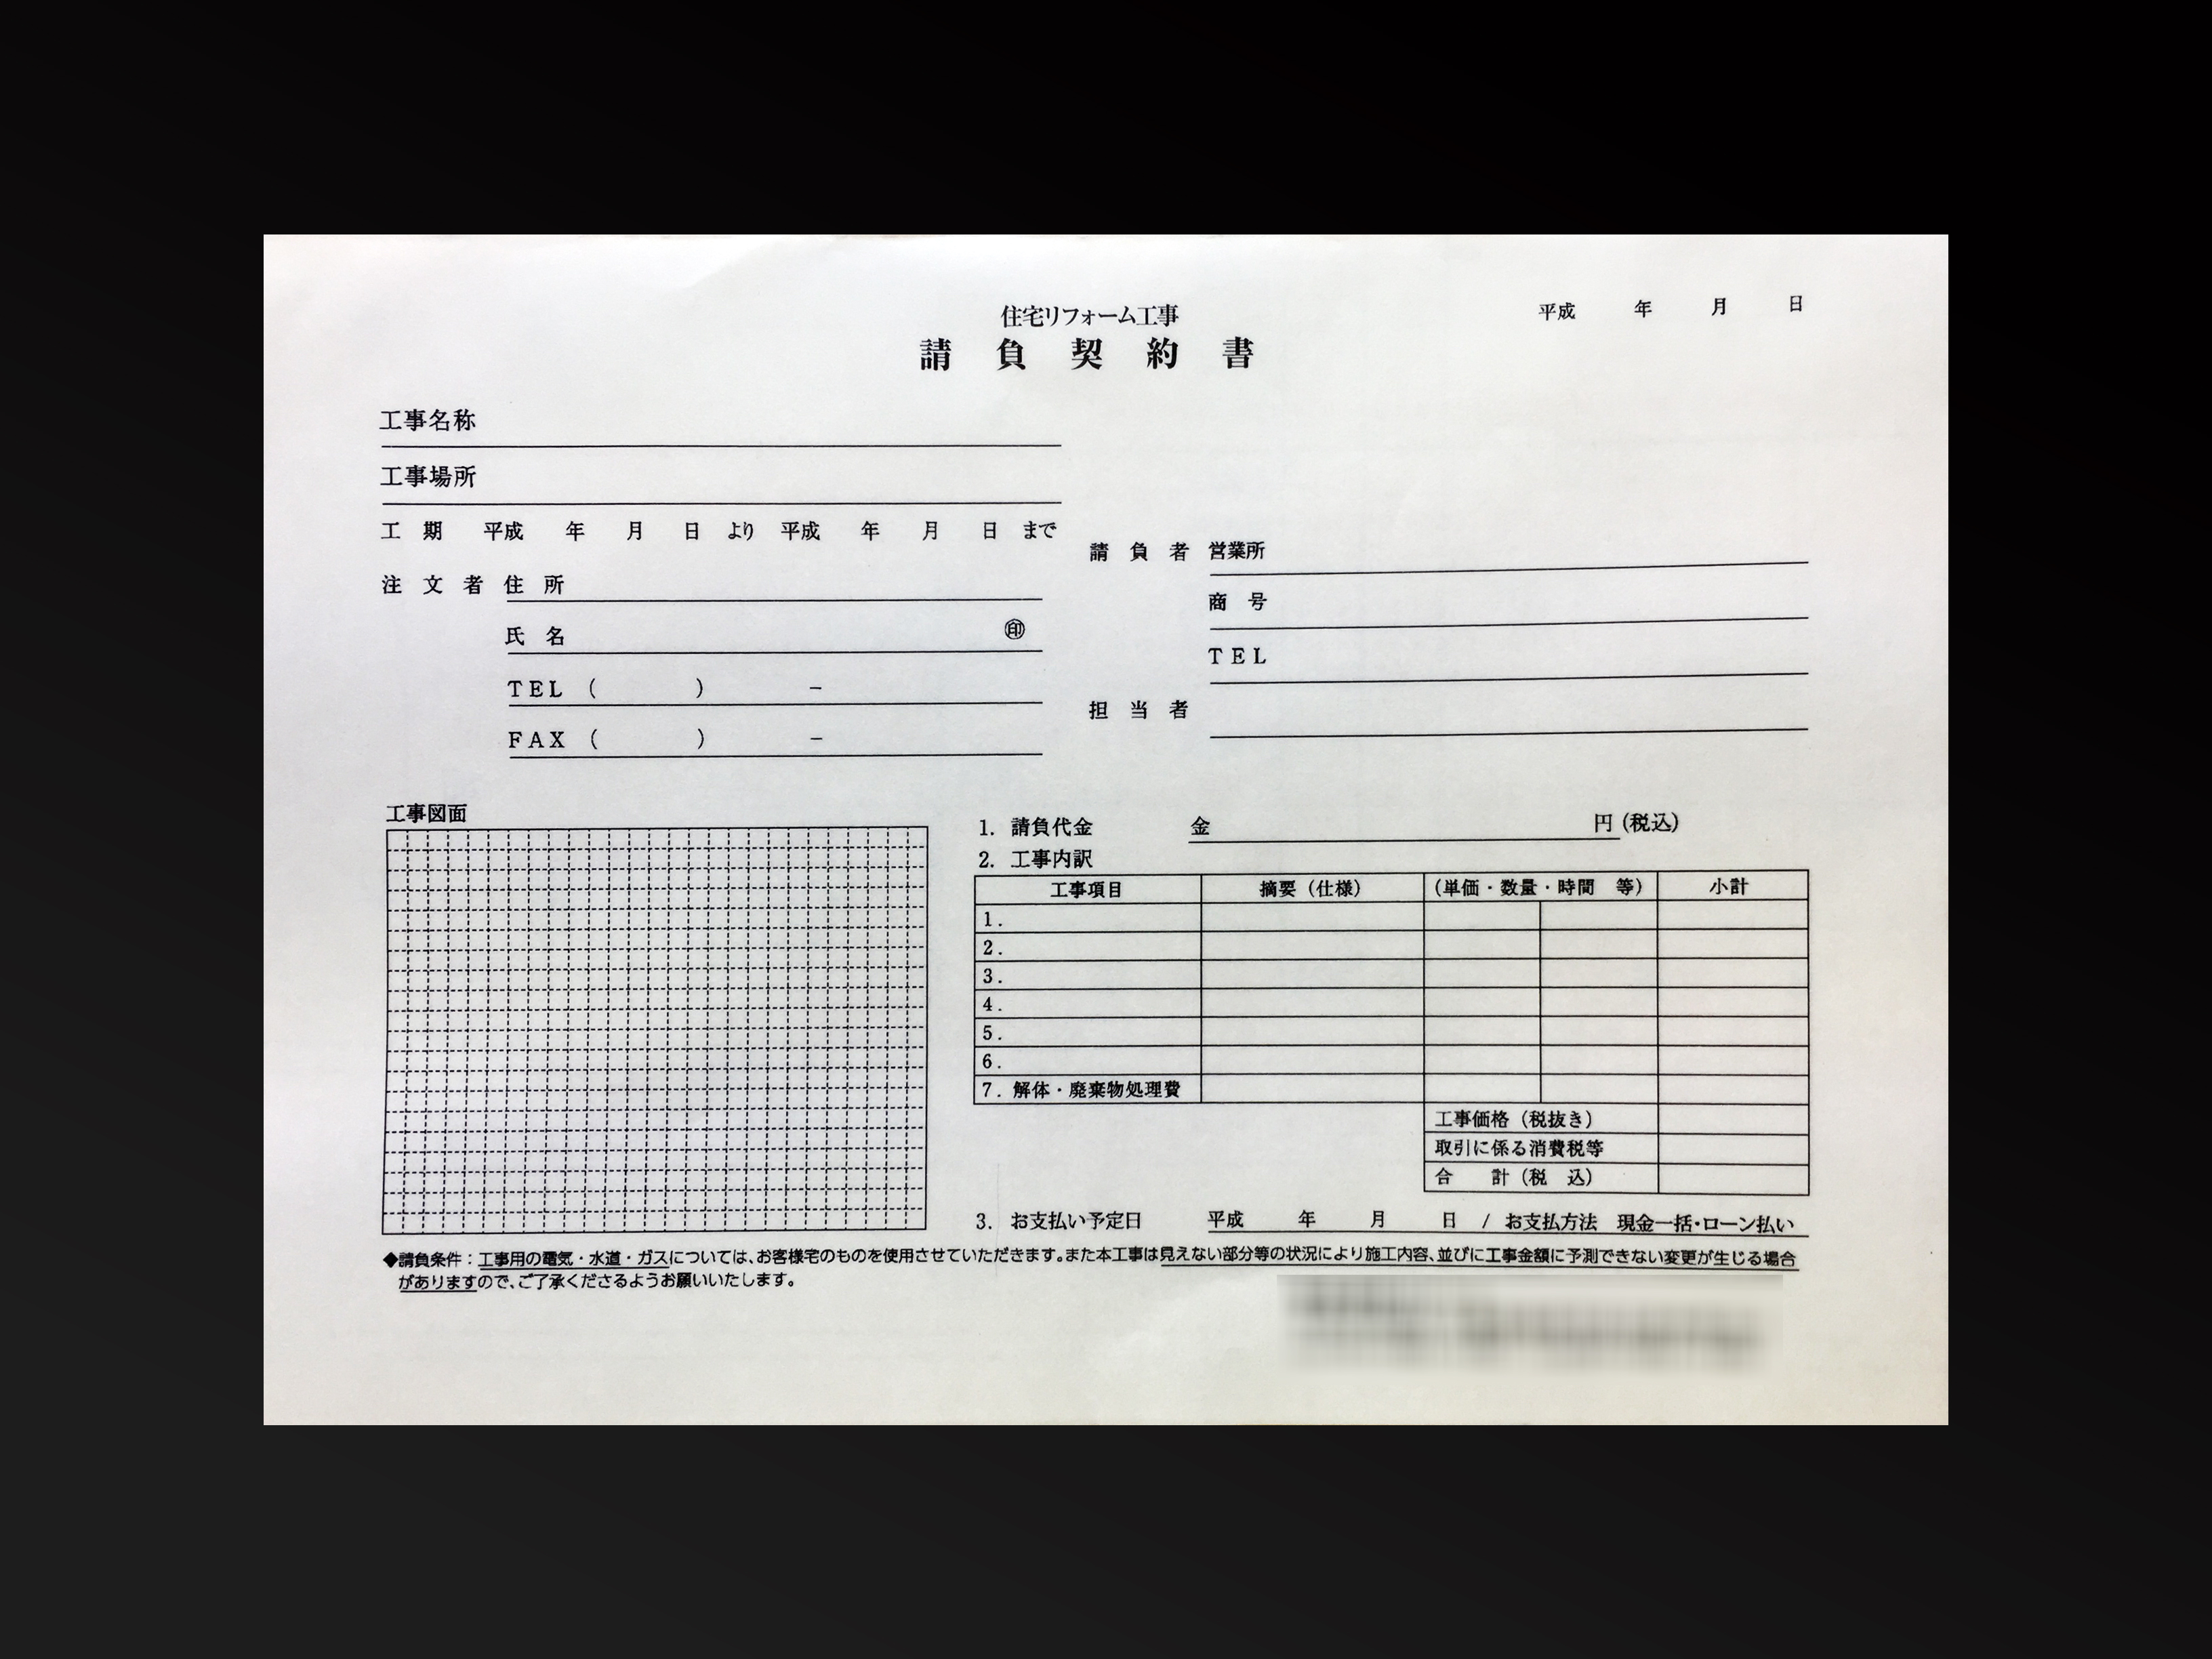 リフォーム工事で使用する請負契約書(2枚複写)の伝票作成実績